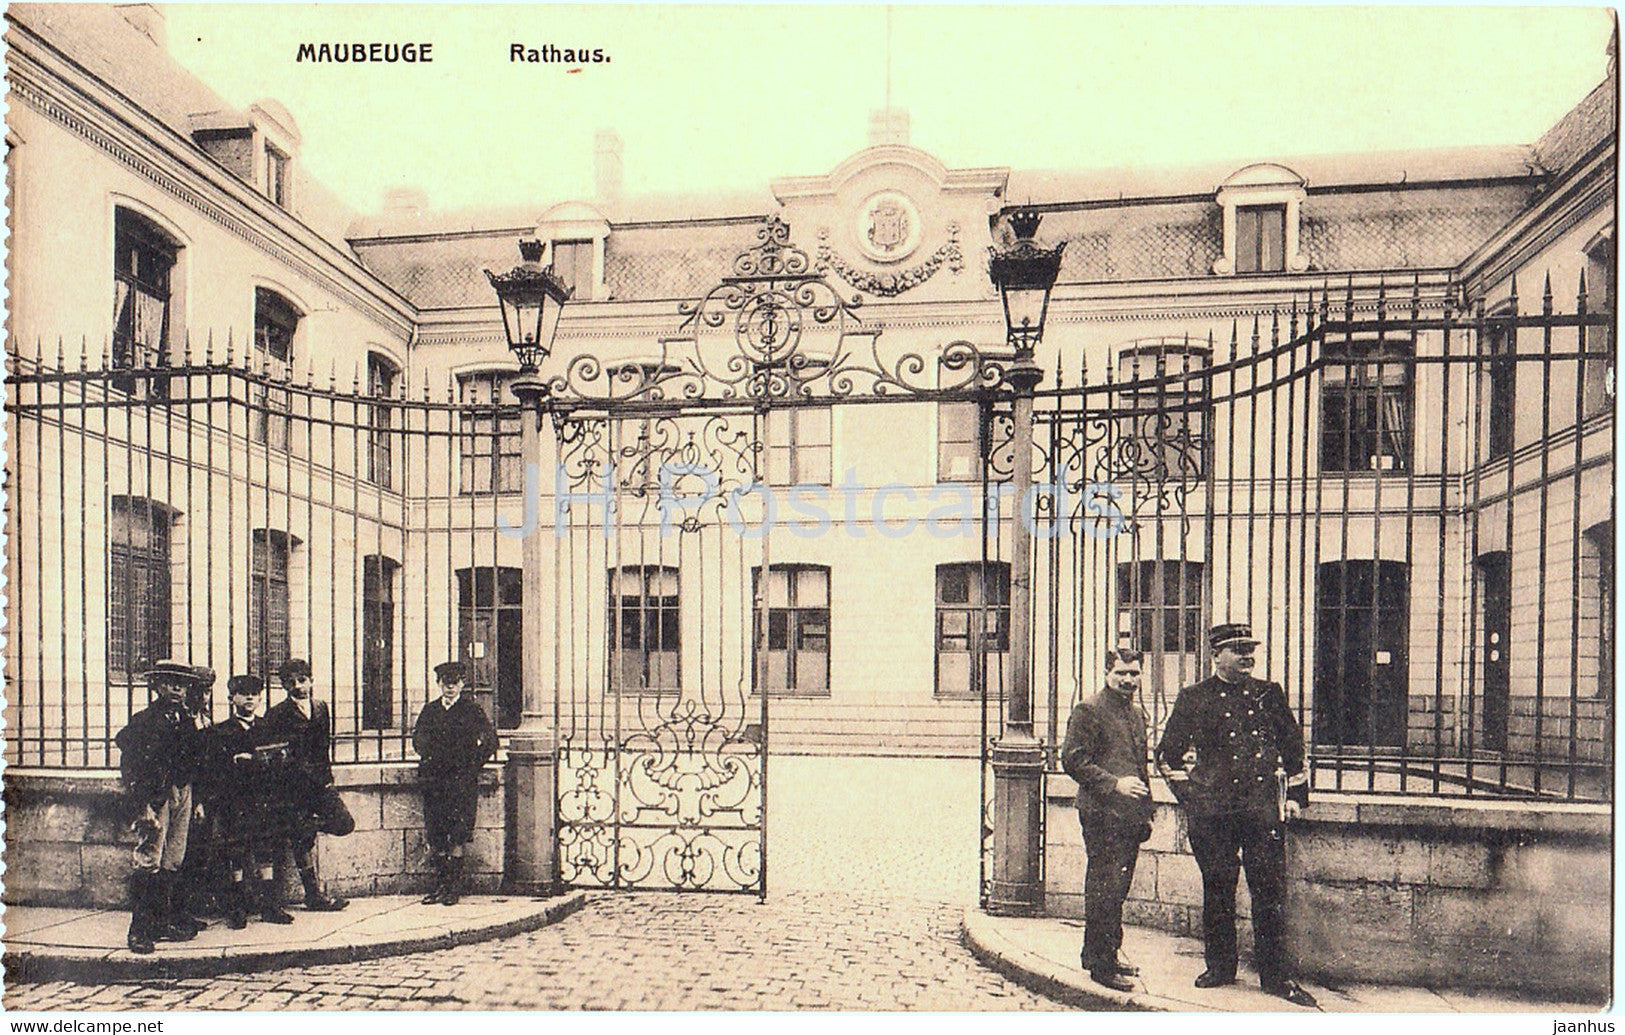 Maubeuge - Rathaus - Town Hall - old postcard - France - unused - JH Postcards